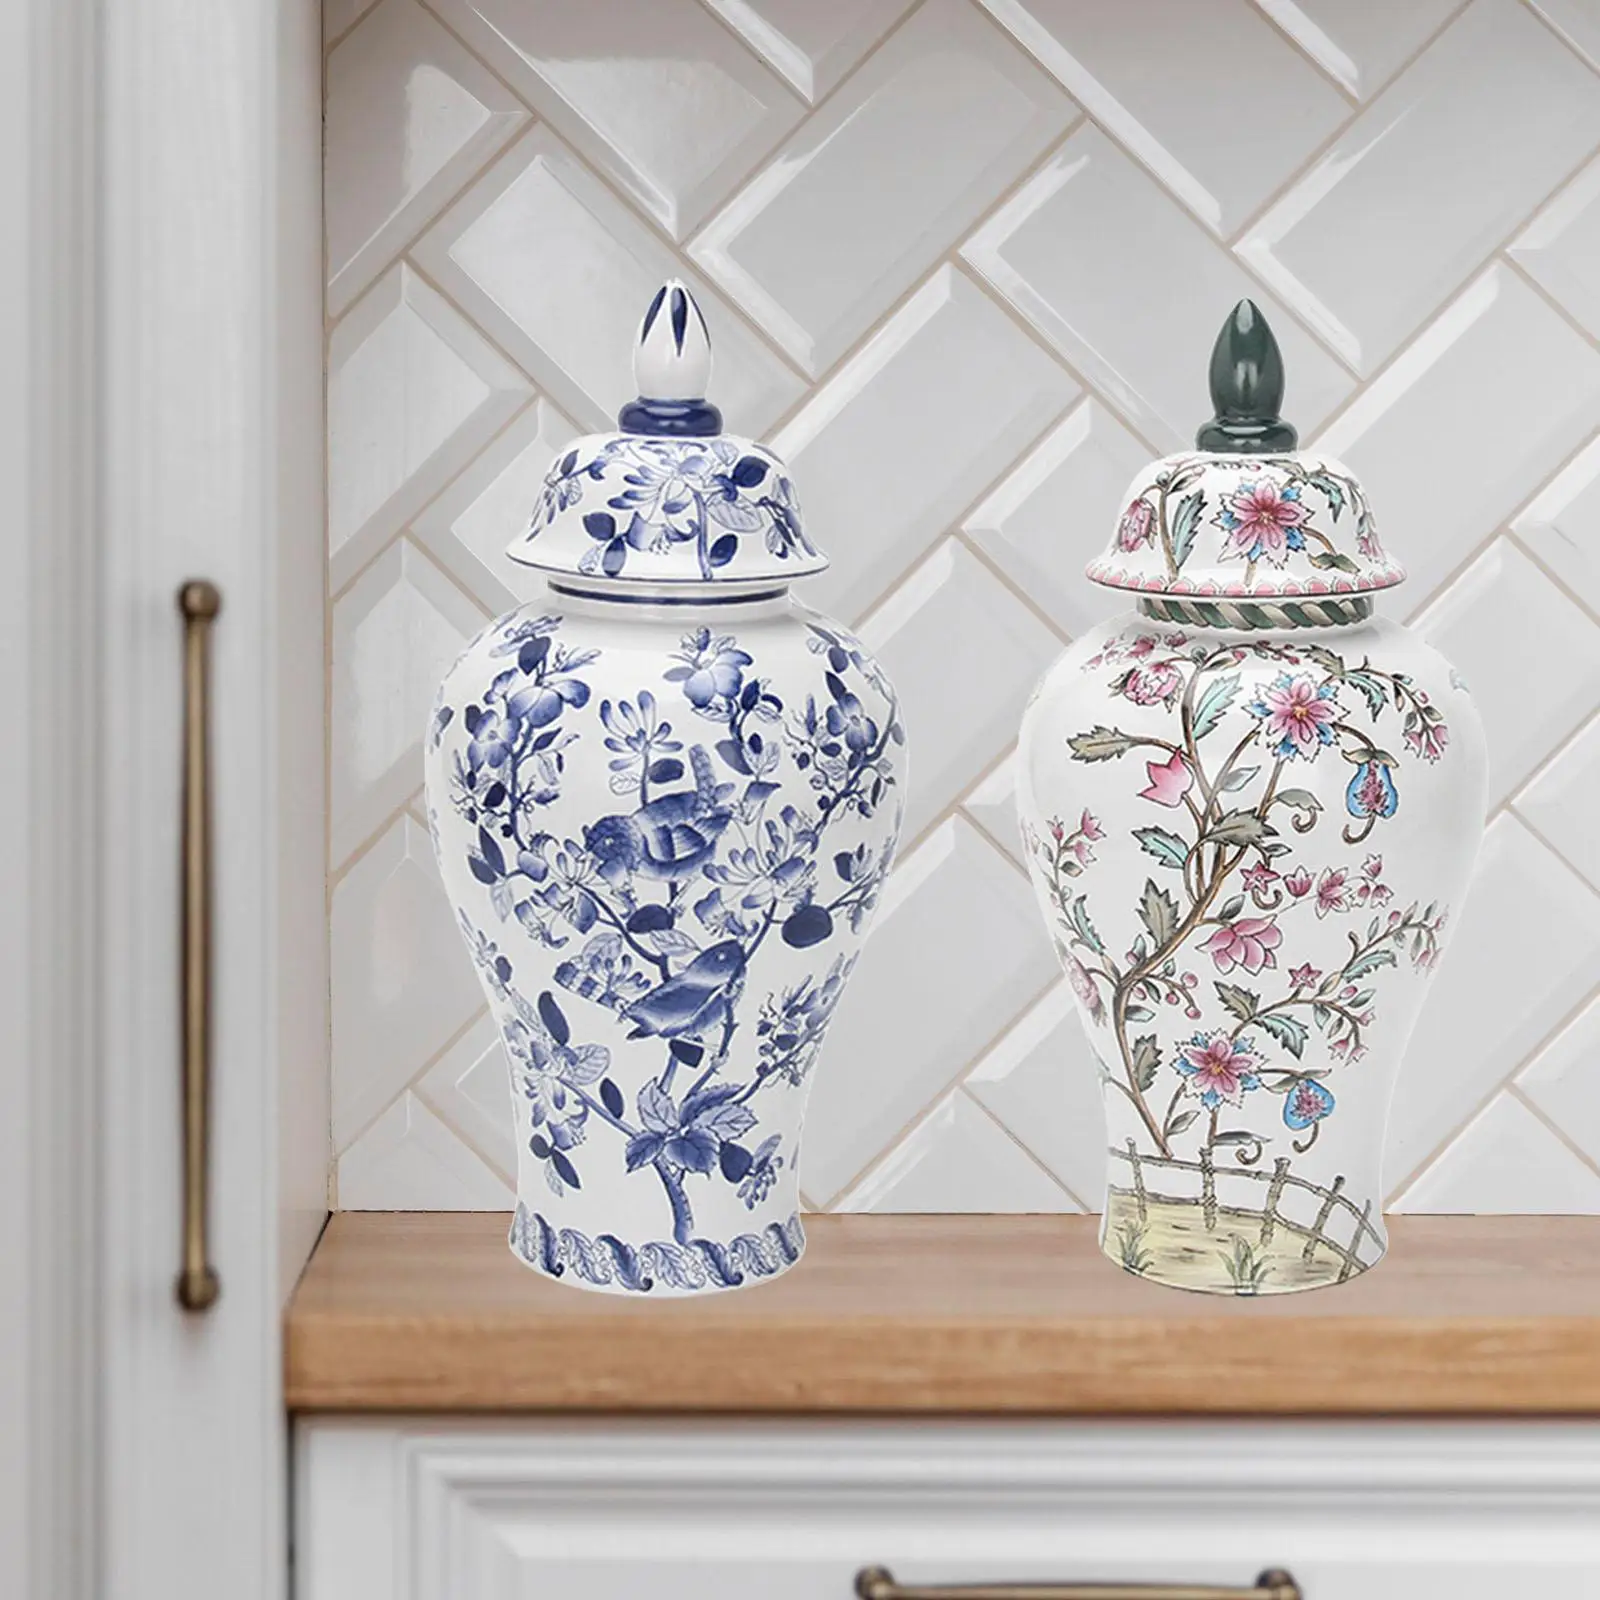 Ceramic Flower Vase Temple Jar Decor Organizer Porcelain Ginger Jar for Home